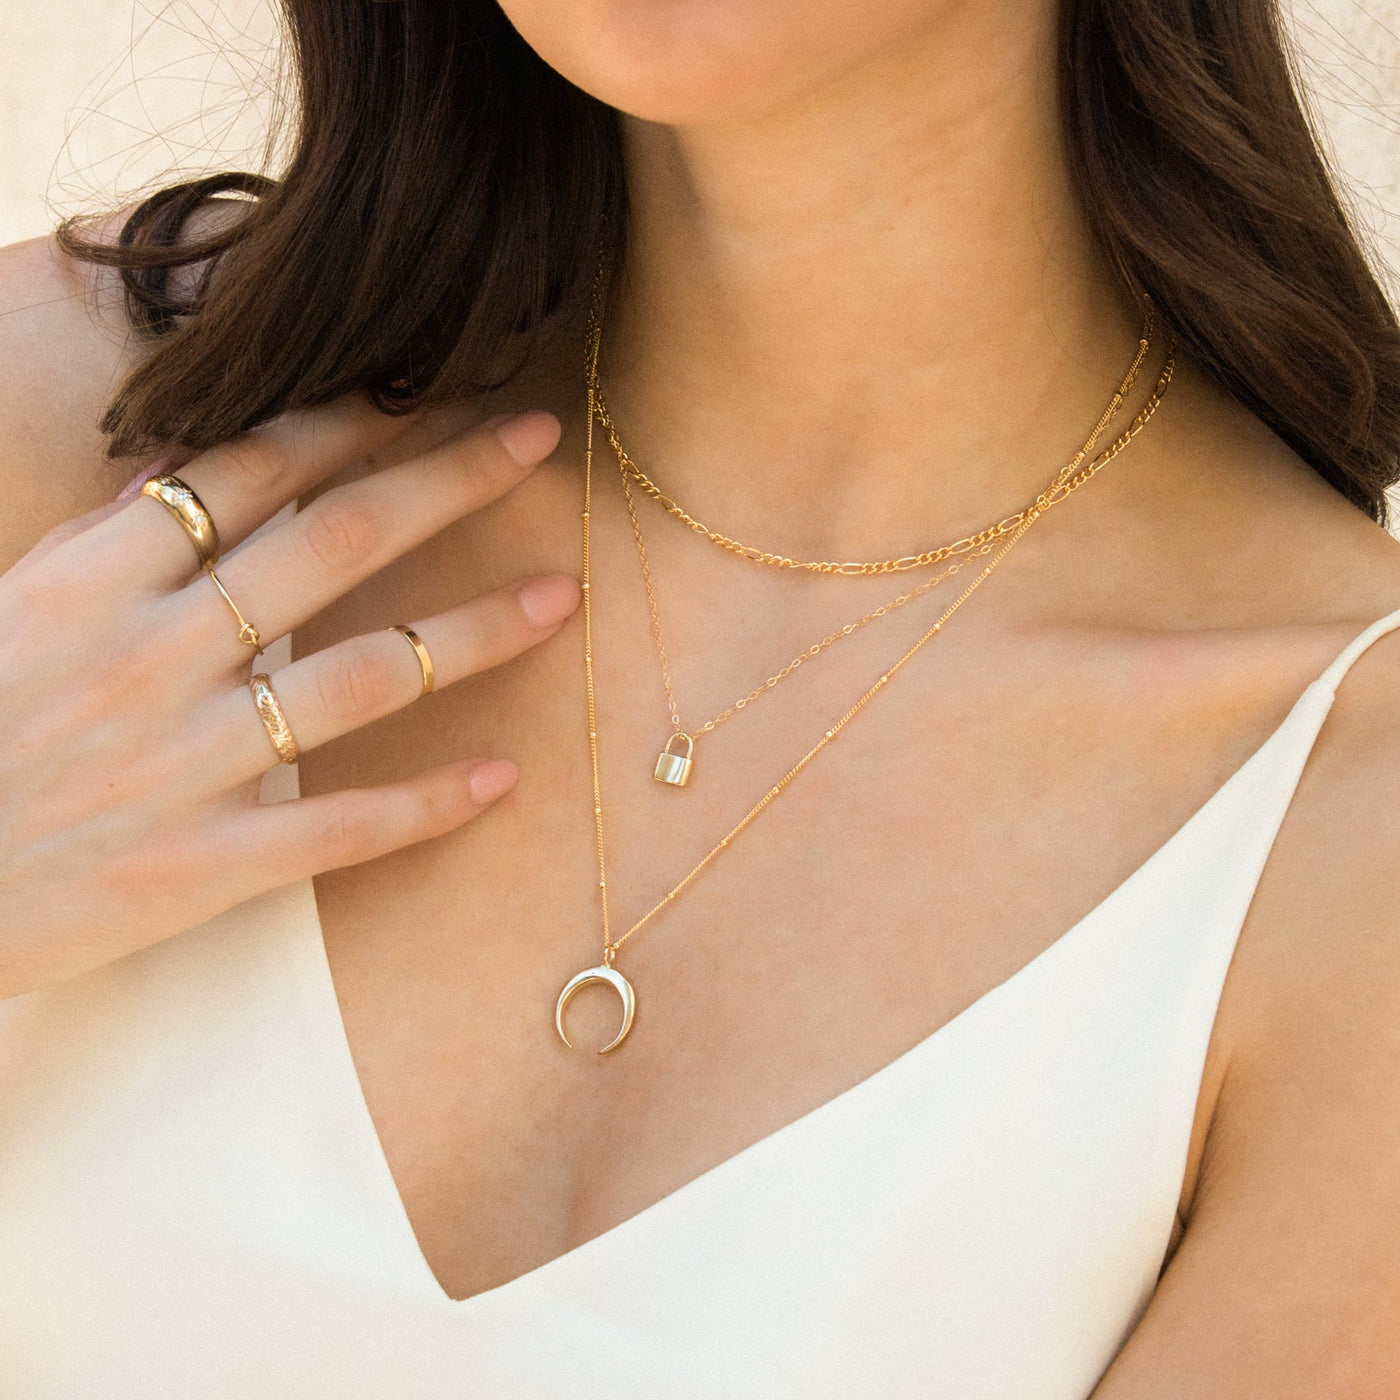 Tiny Lock Necklace | Simple & Dainty Jewelry